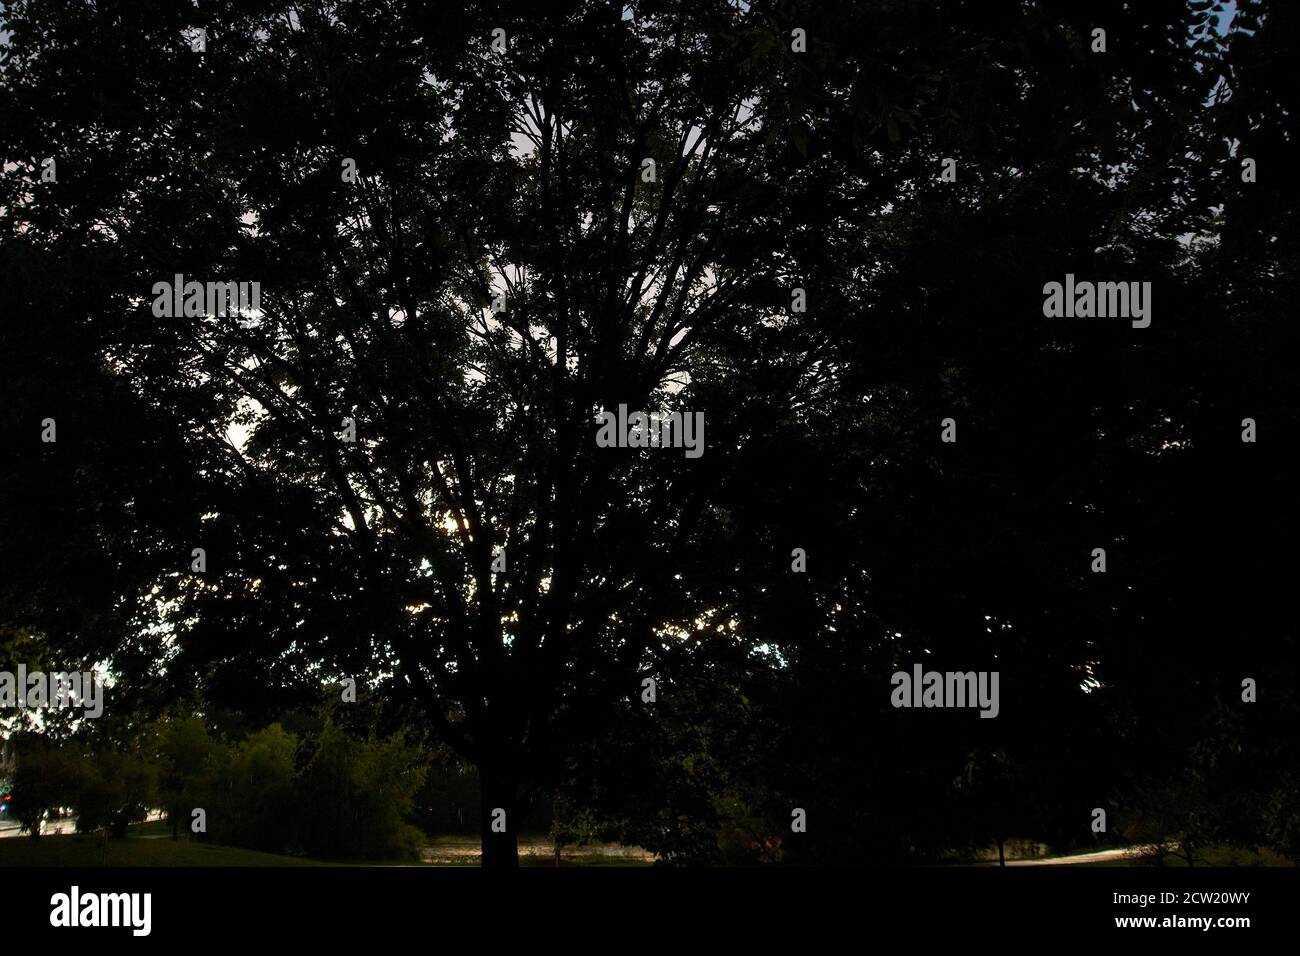 Shadowy tree canopy. Stock Photo